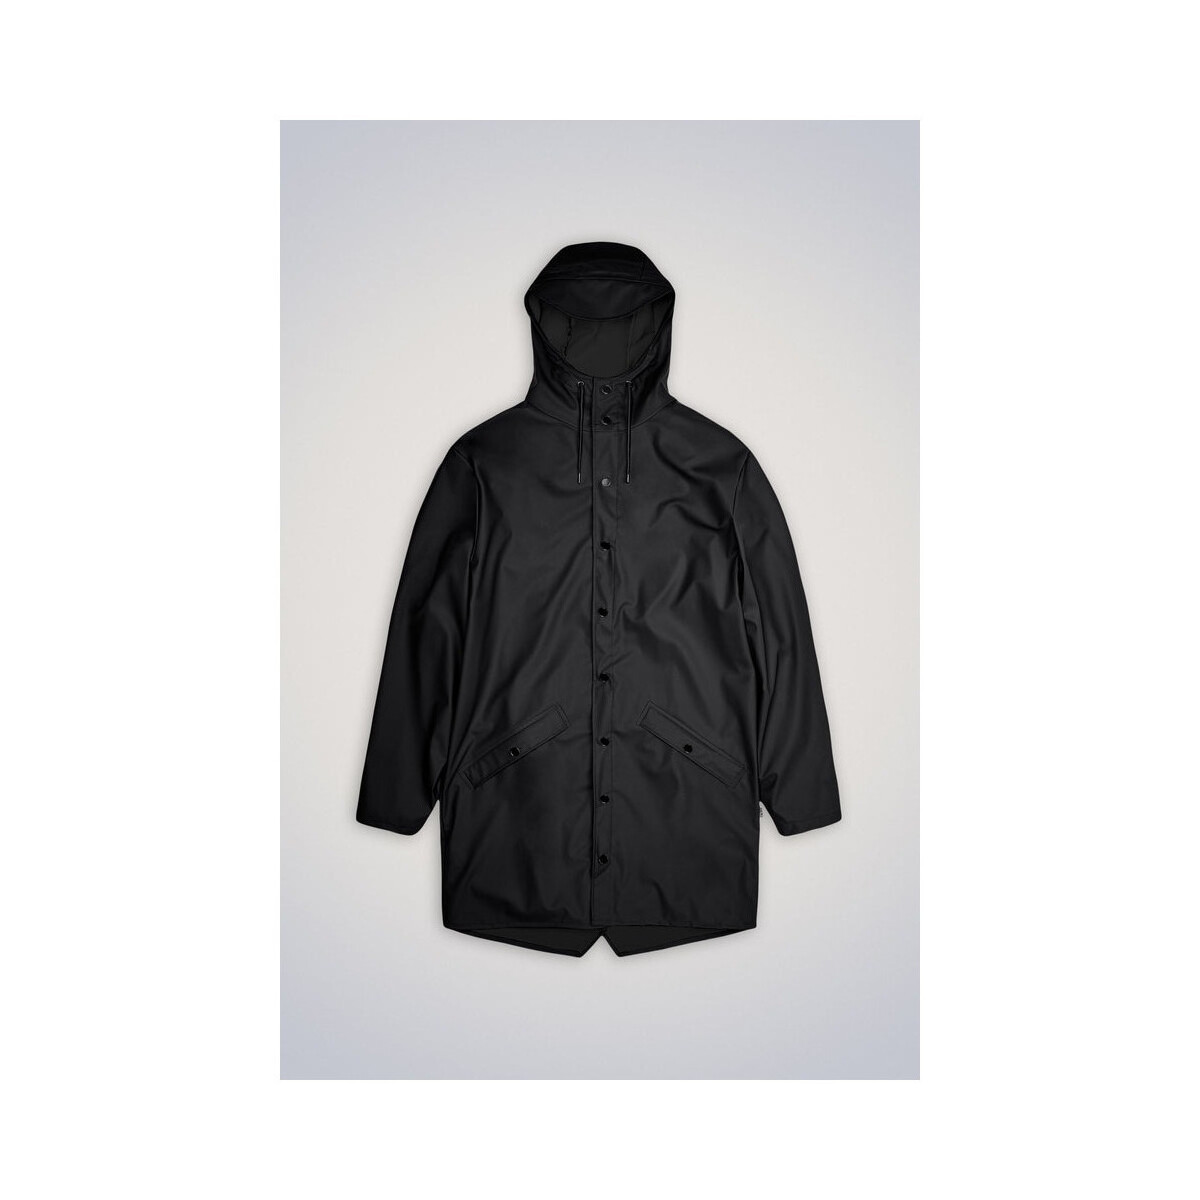 Vêtements Manteaux Rains - LONG JACKET W3 Noir